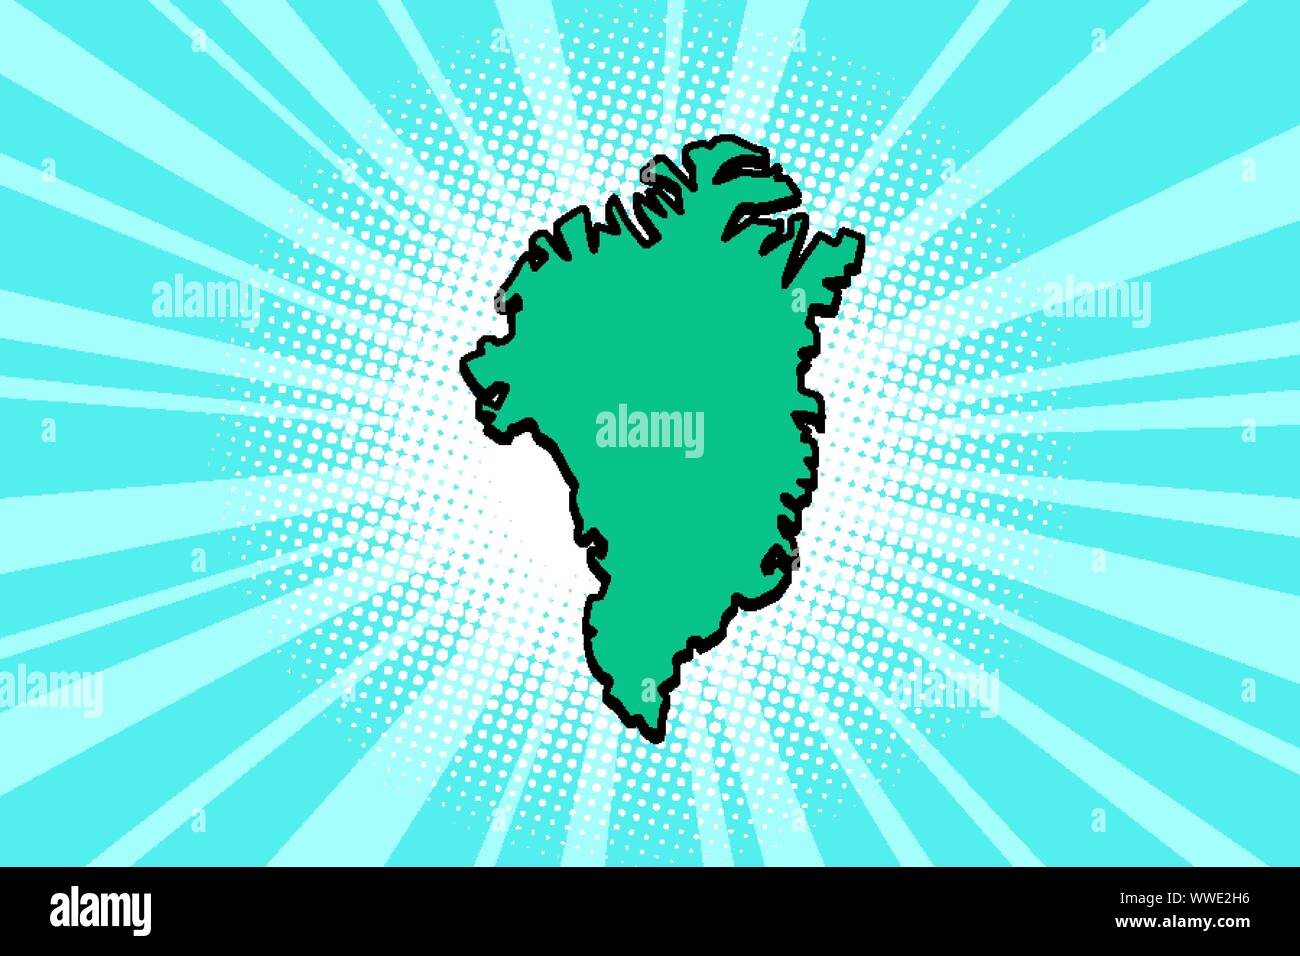 La Groenlandia mappa isola di silhouette. comic cartoon arte pop retrò illustrazione vettoriale disegno Illustrazione Vettoriale